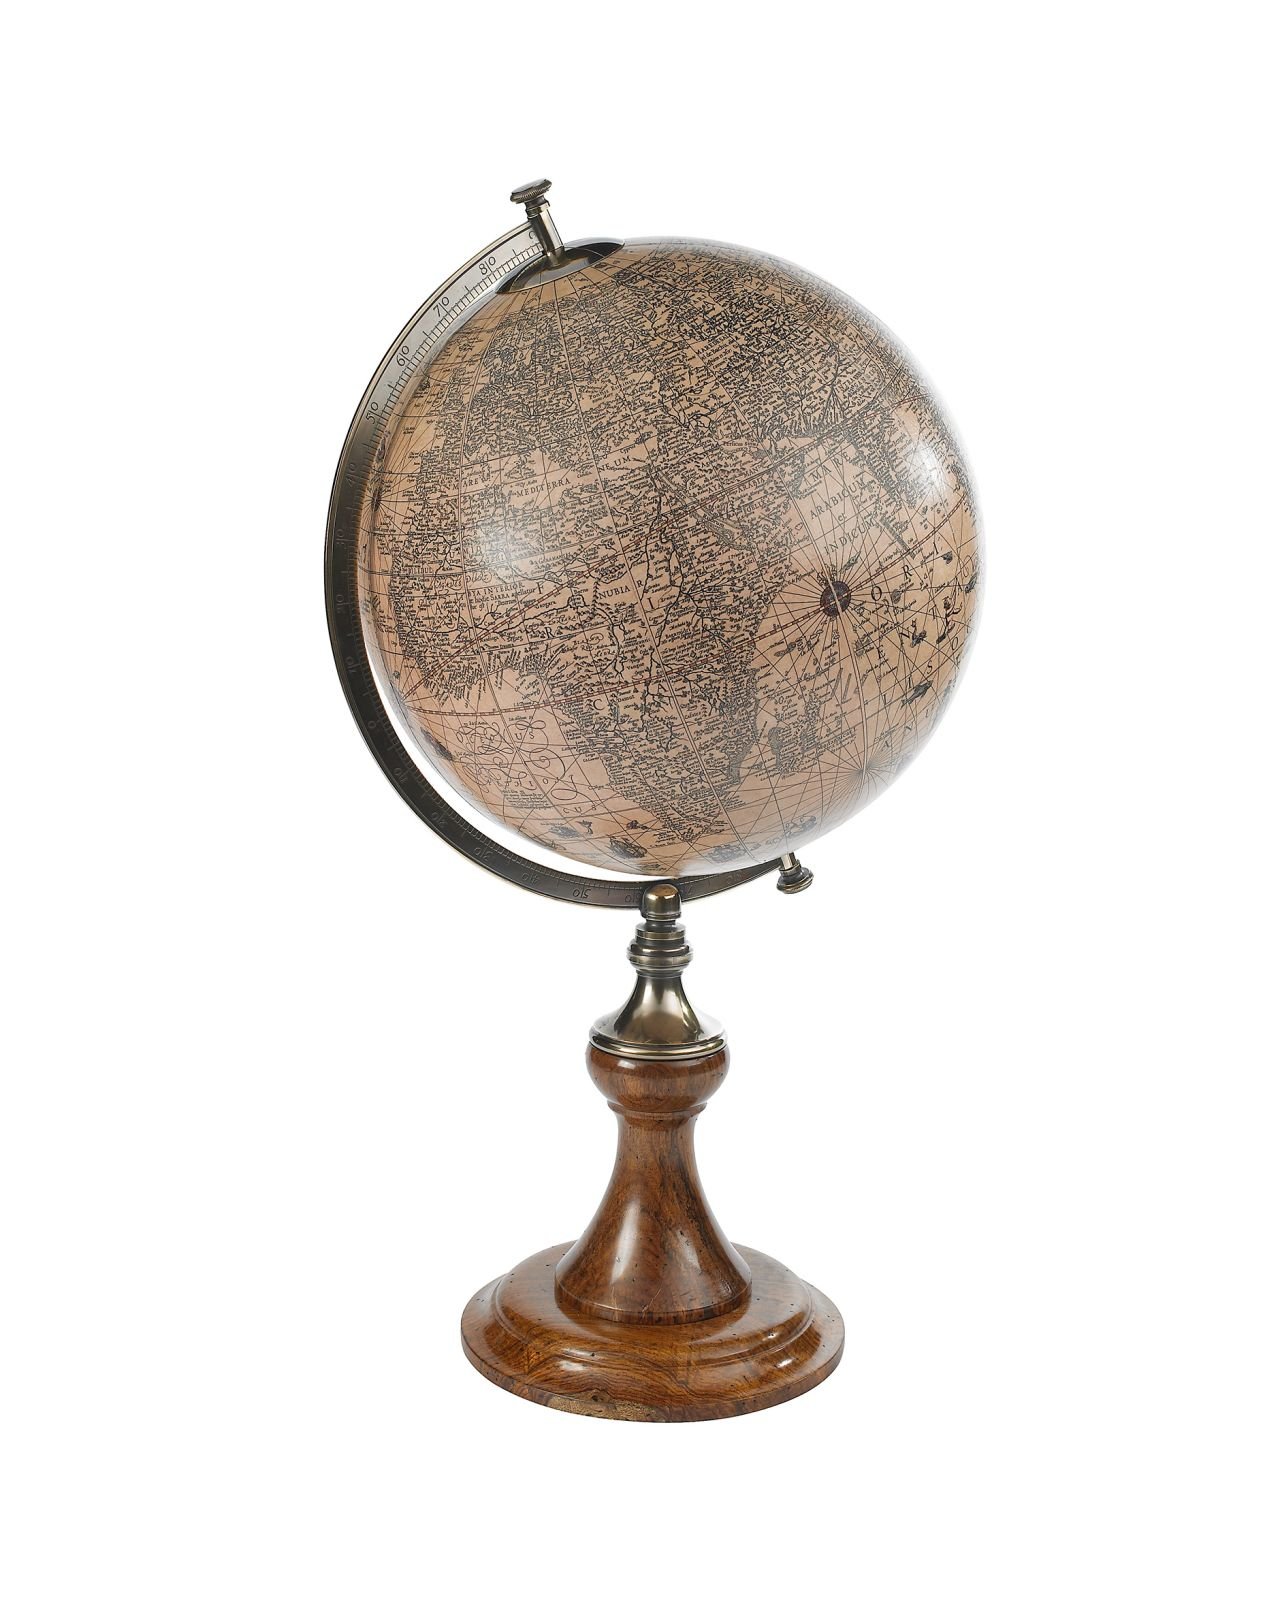 Hondius Classic 1627 globe